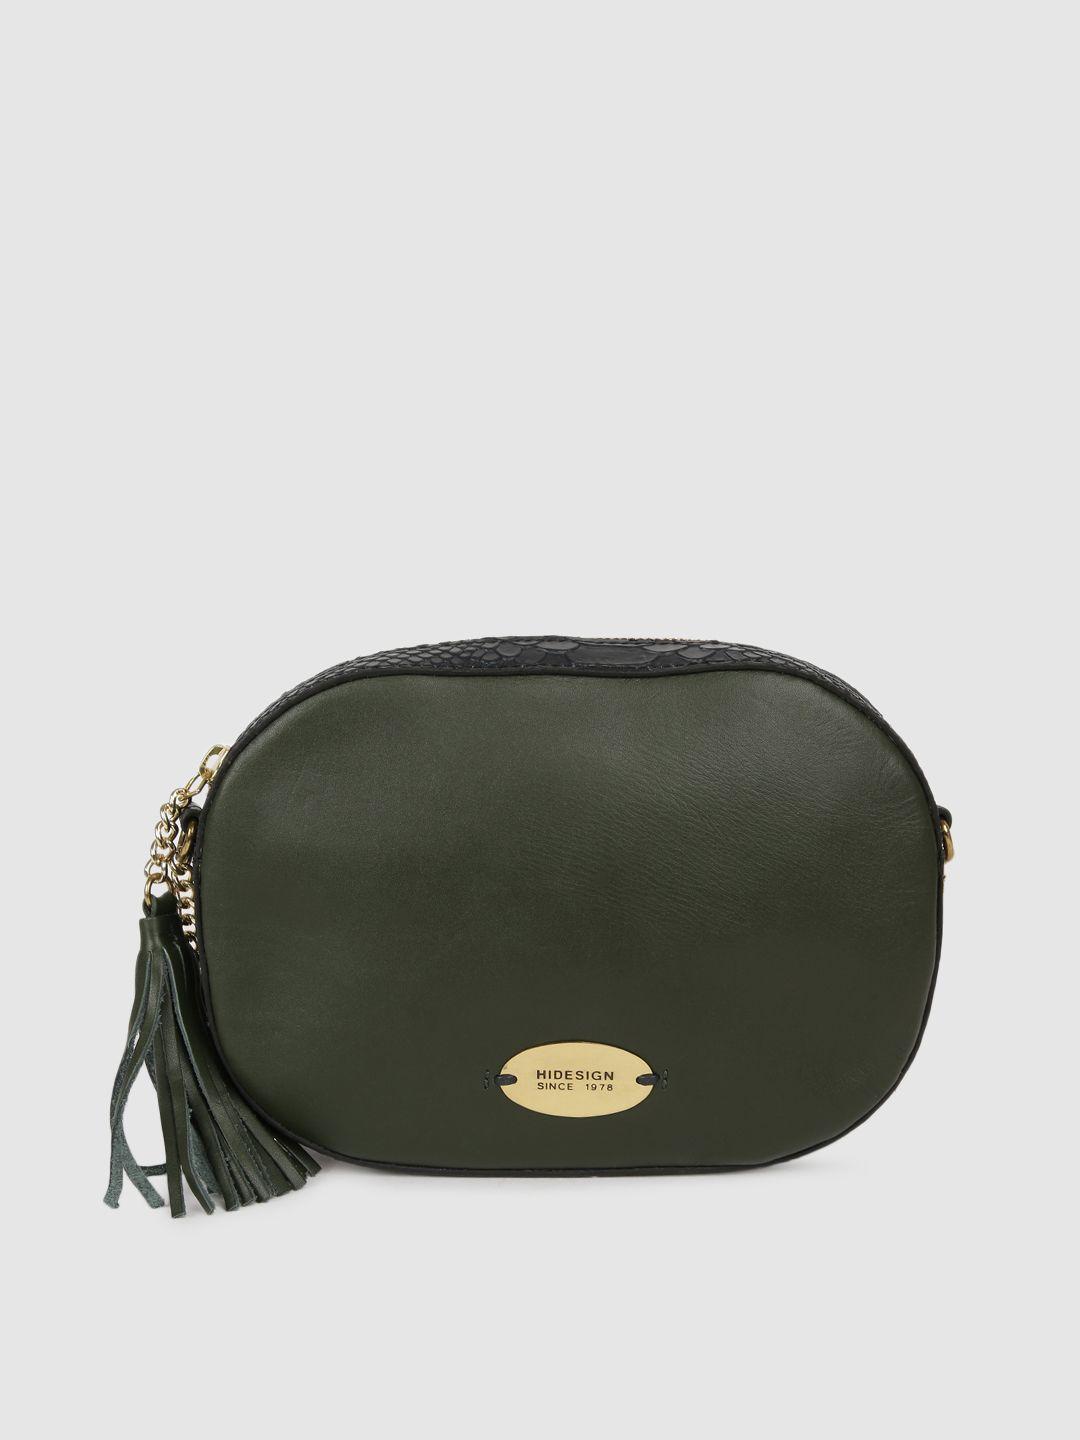 hidesign olive green solid sling bag